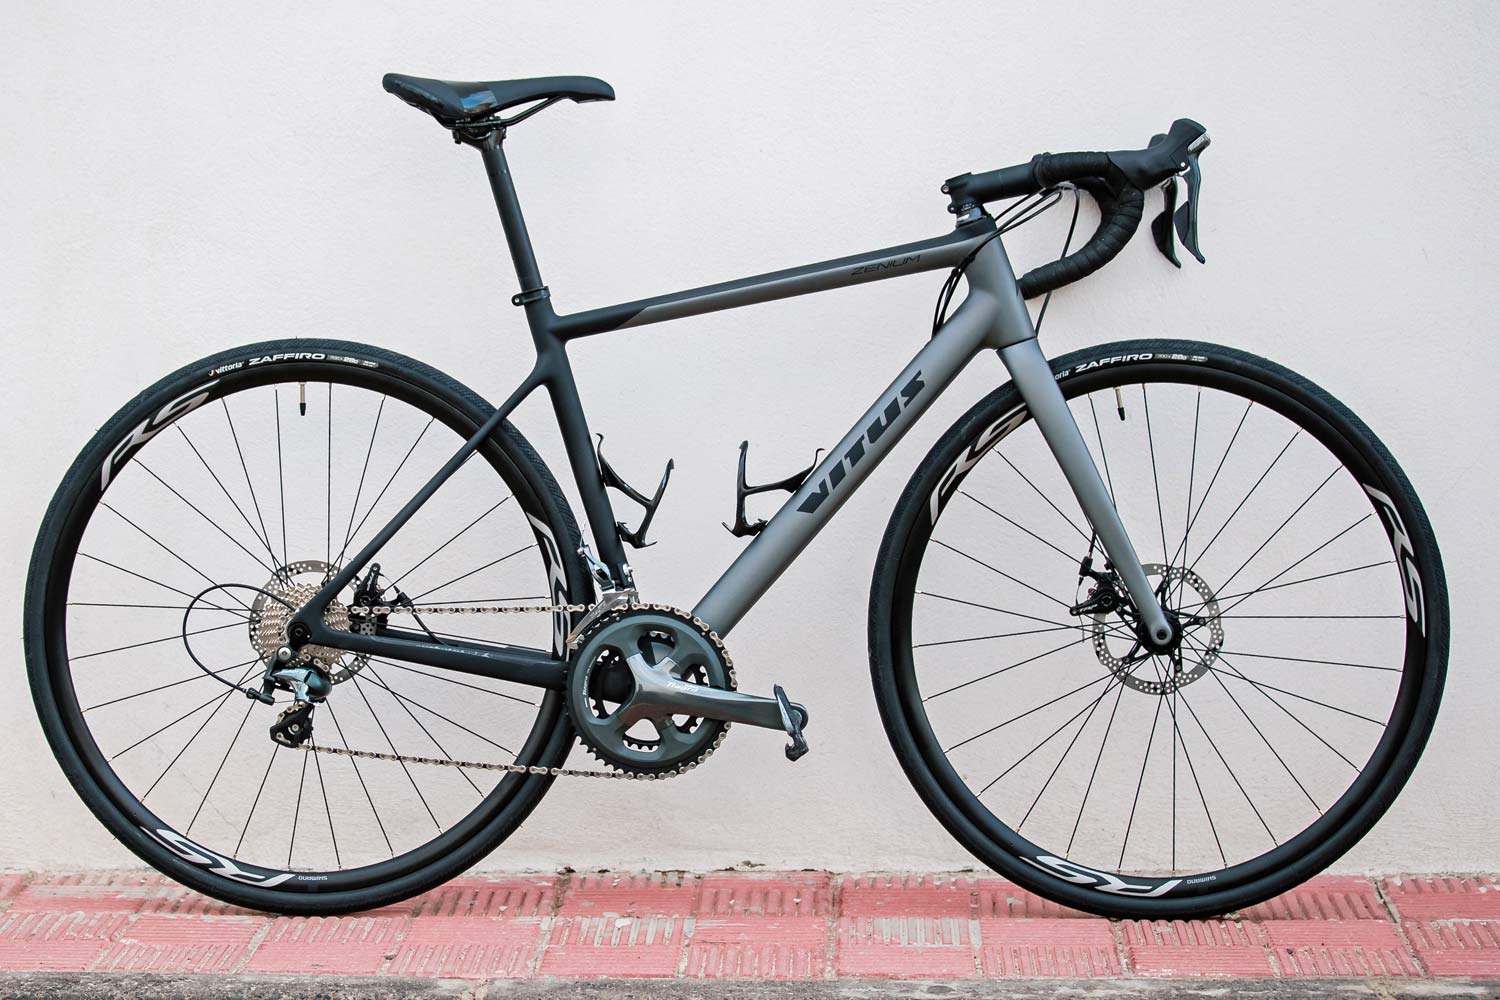 2019 Vitus Zenium affordable carbon disc brake road bike